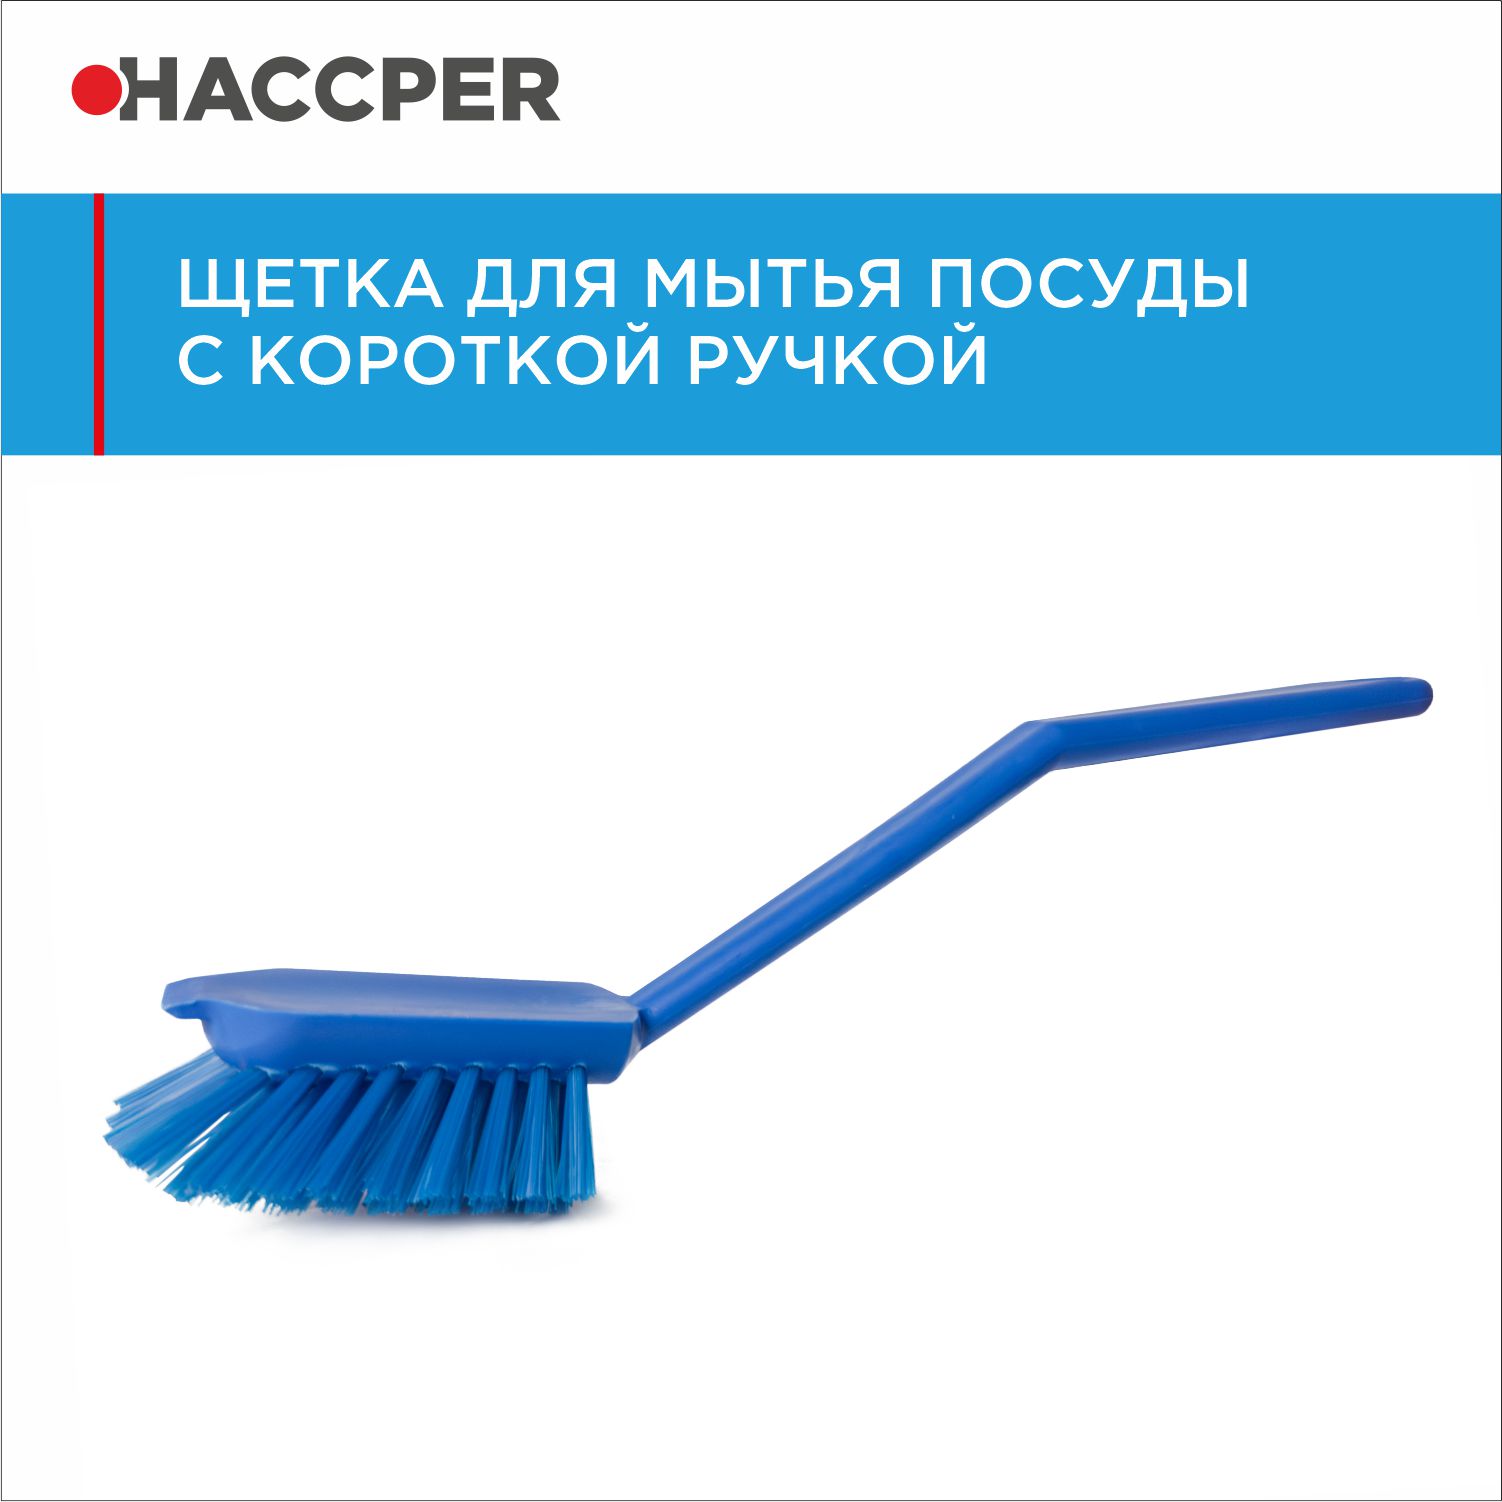 Щетка HACCPER с короткой ручкой для мытья посуды, синяя